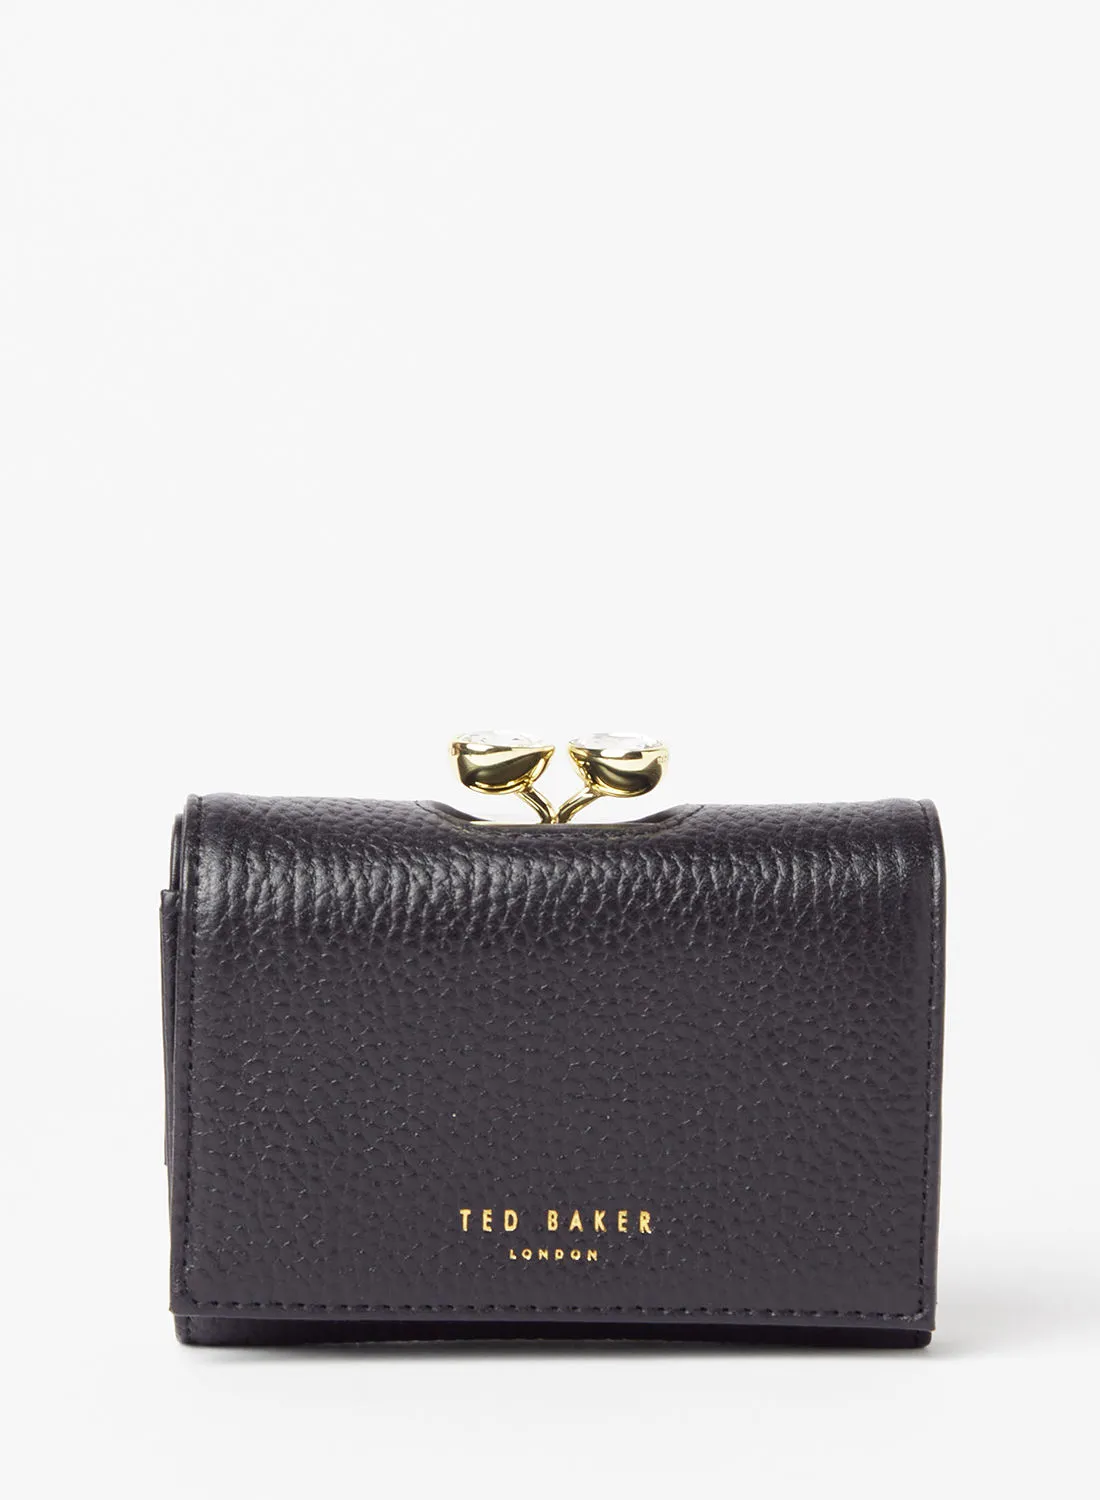 Ted Baker Alyesha Leather Wallet Black